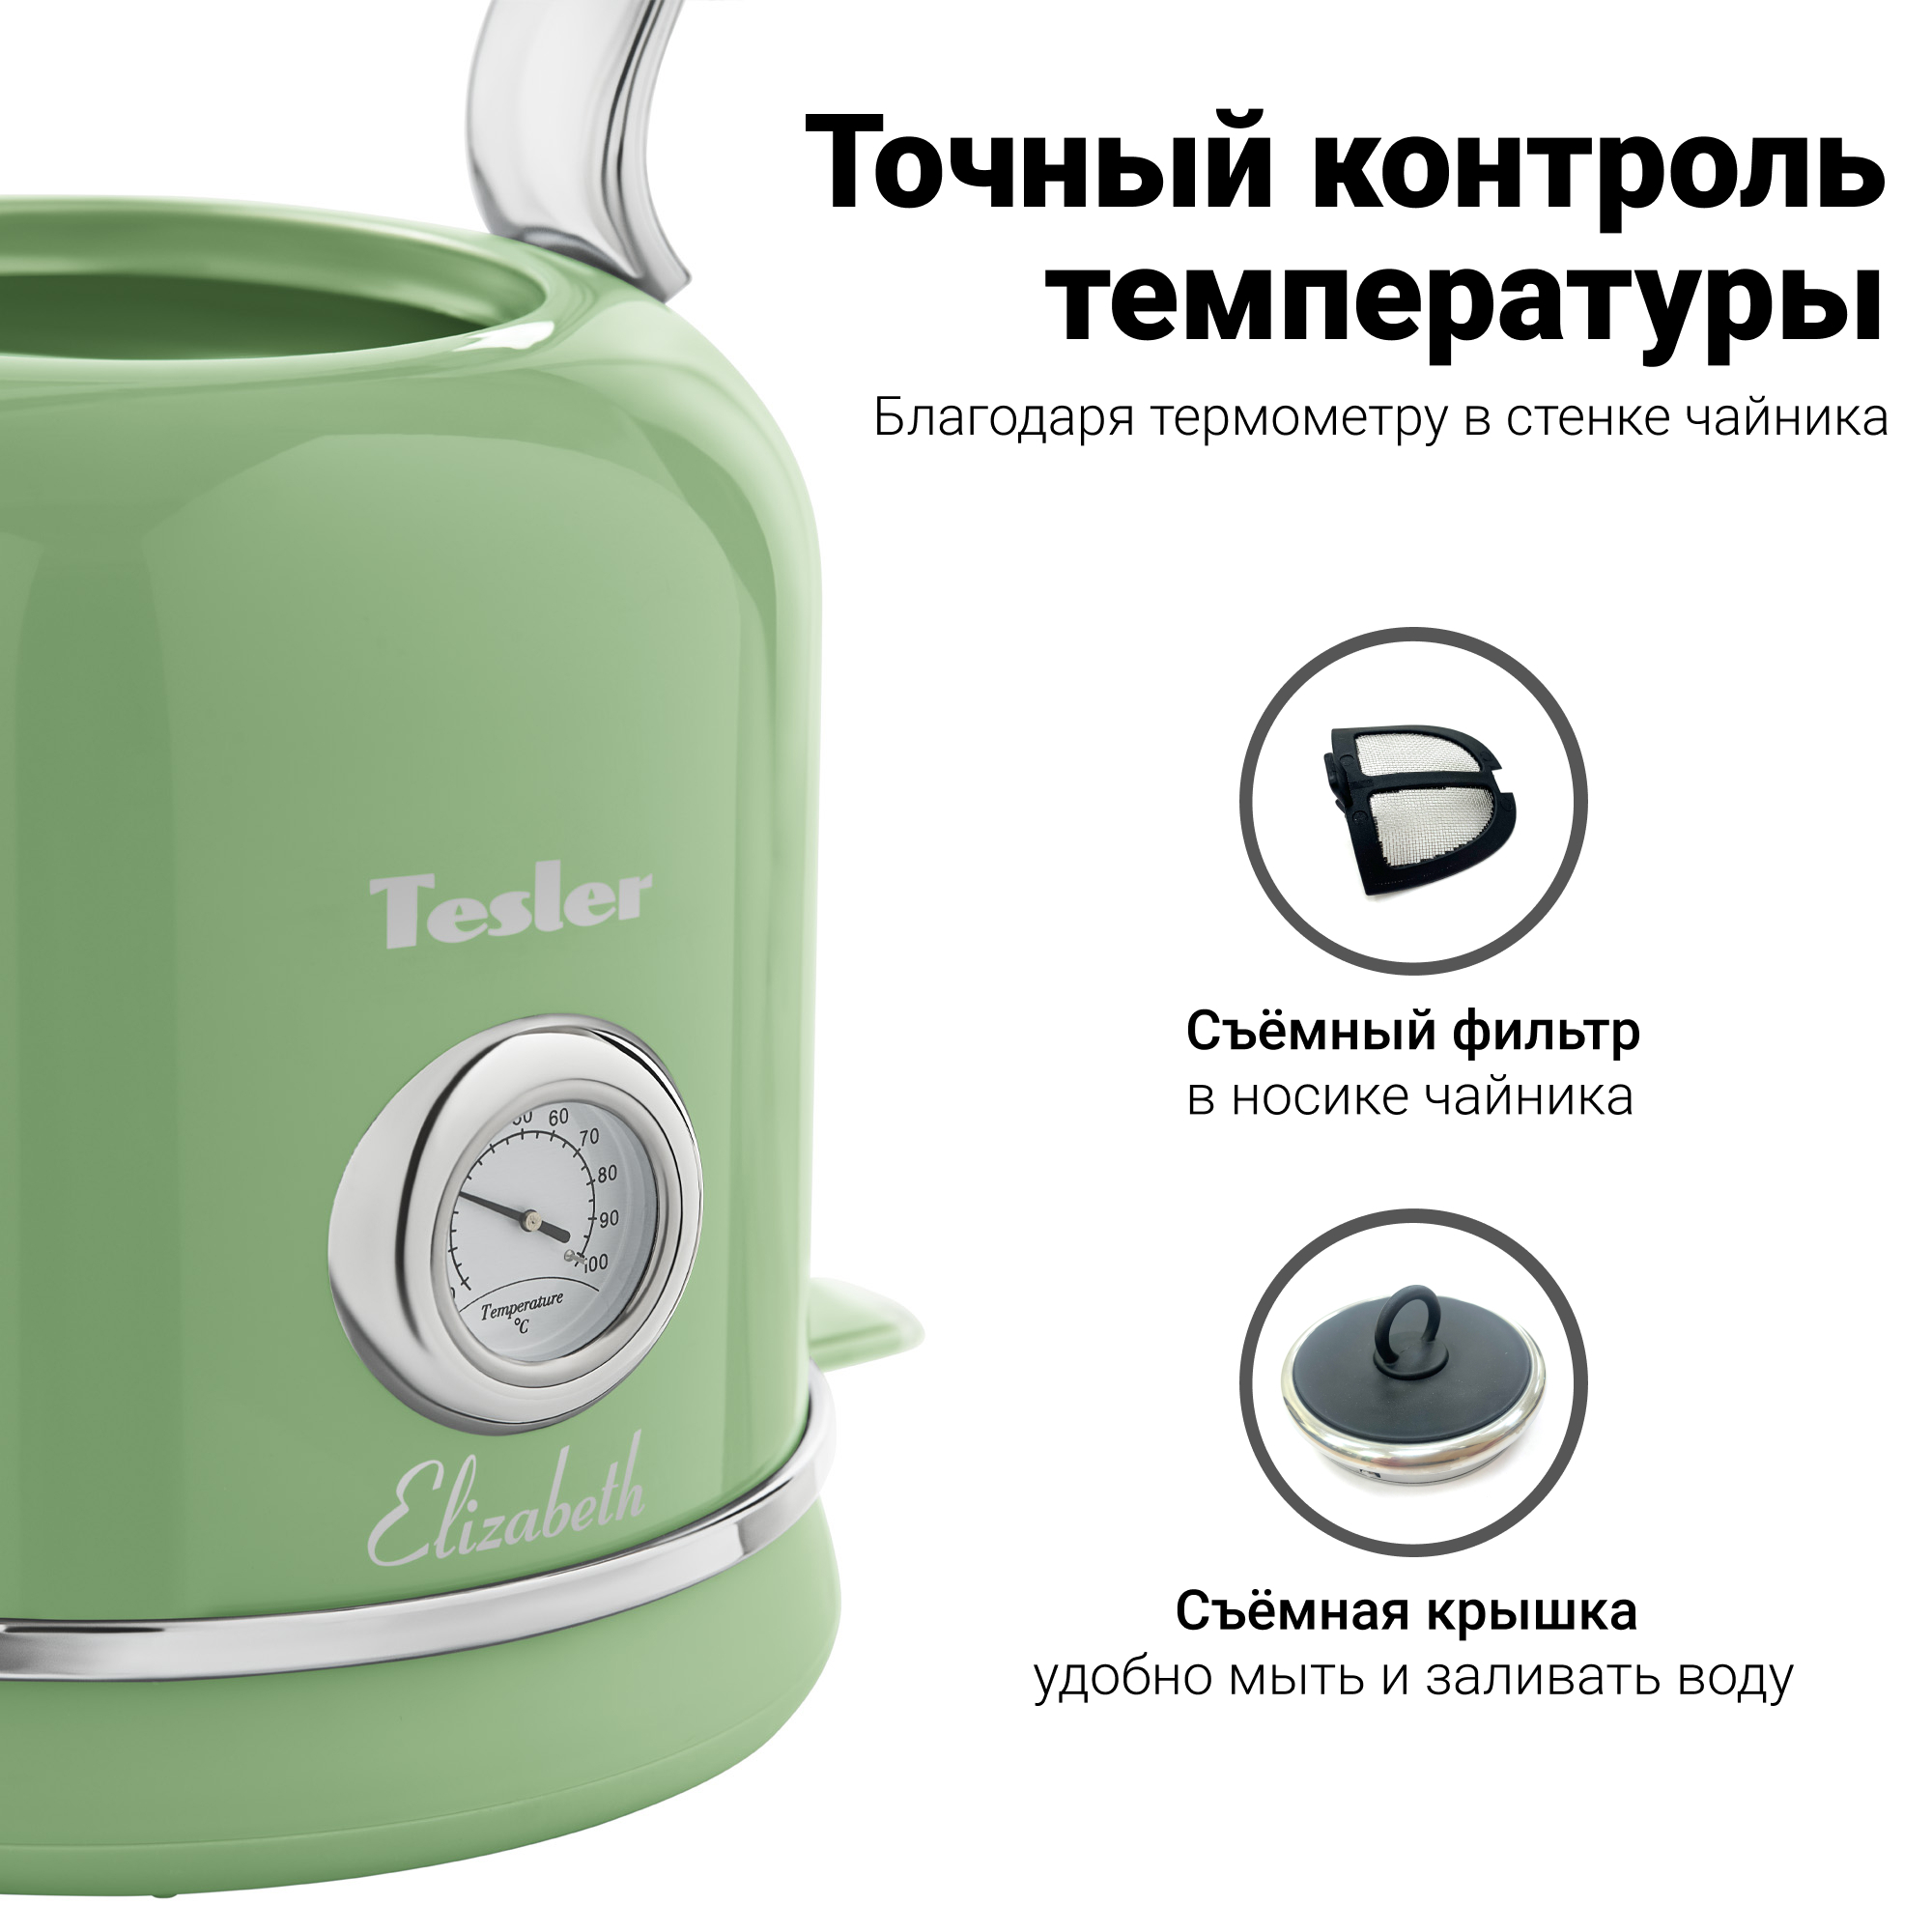 Чайник Электрический Tesler